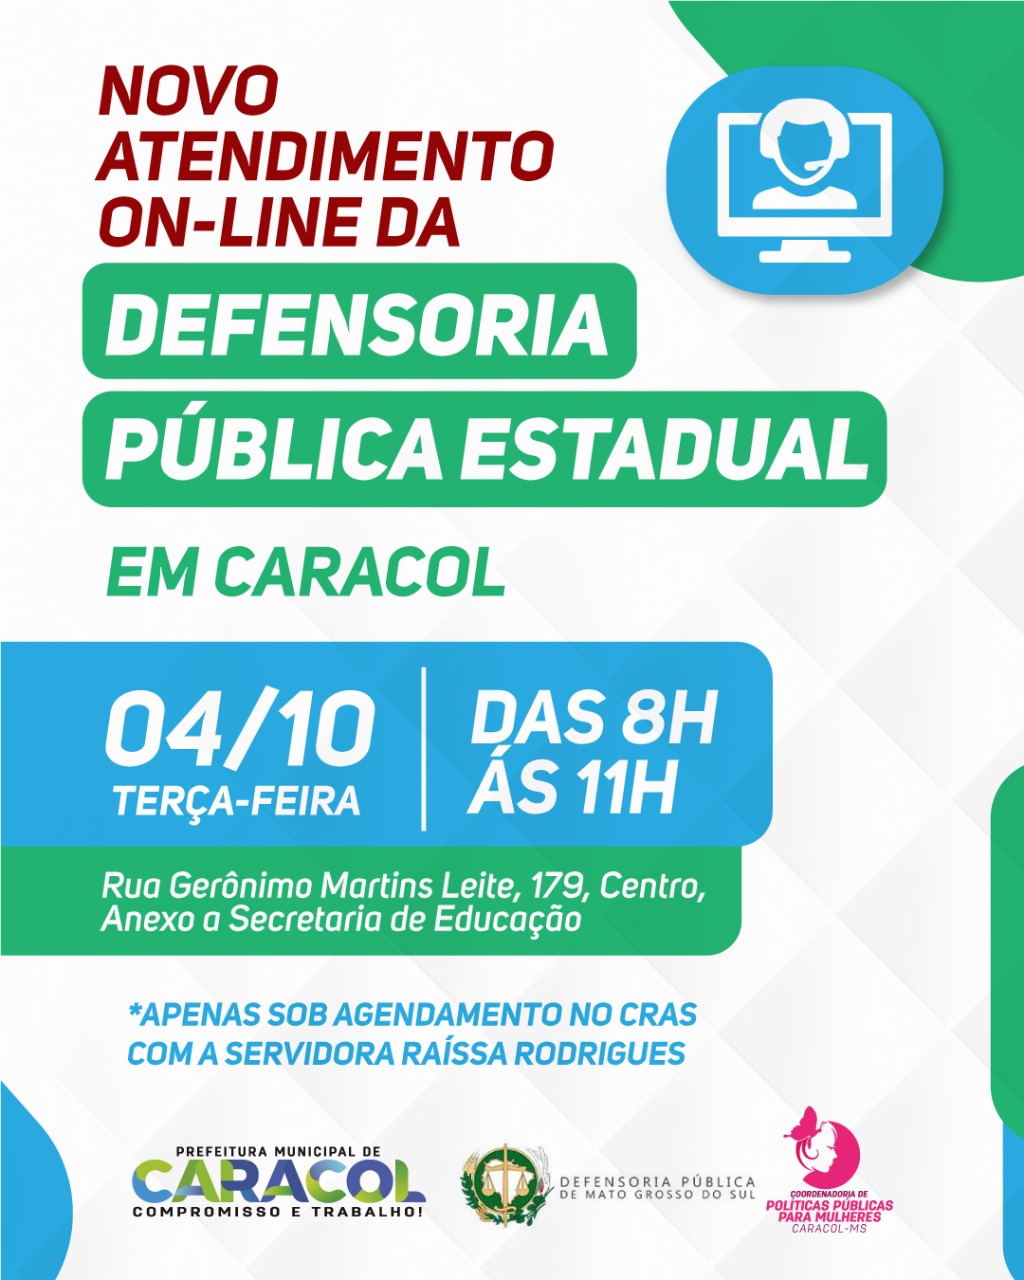 Defensoria Pública Estadual inicia atendimento on-line no município em parceria com Prefeitura de Caracol